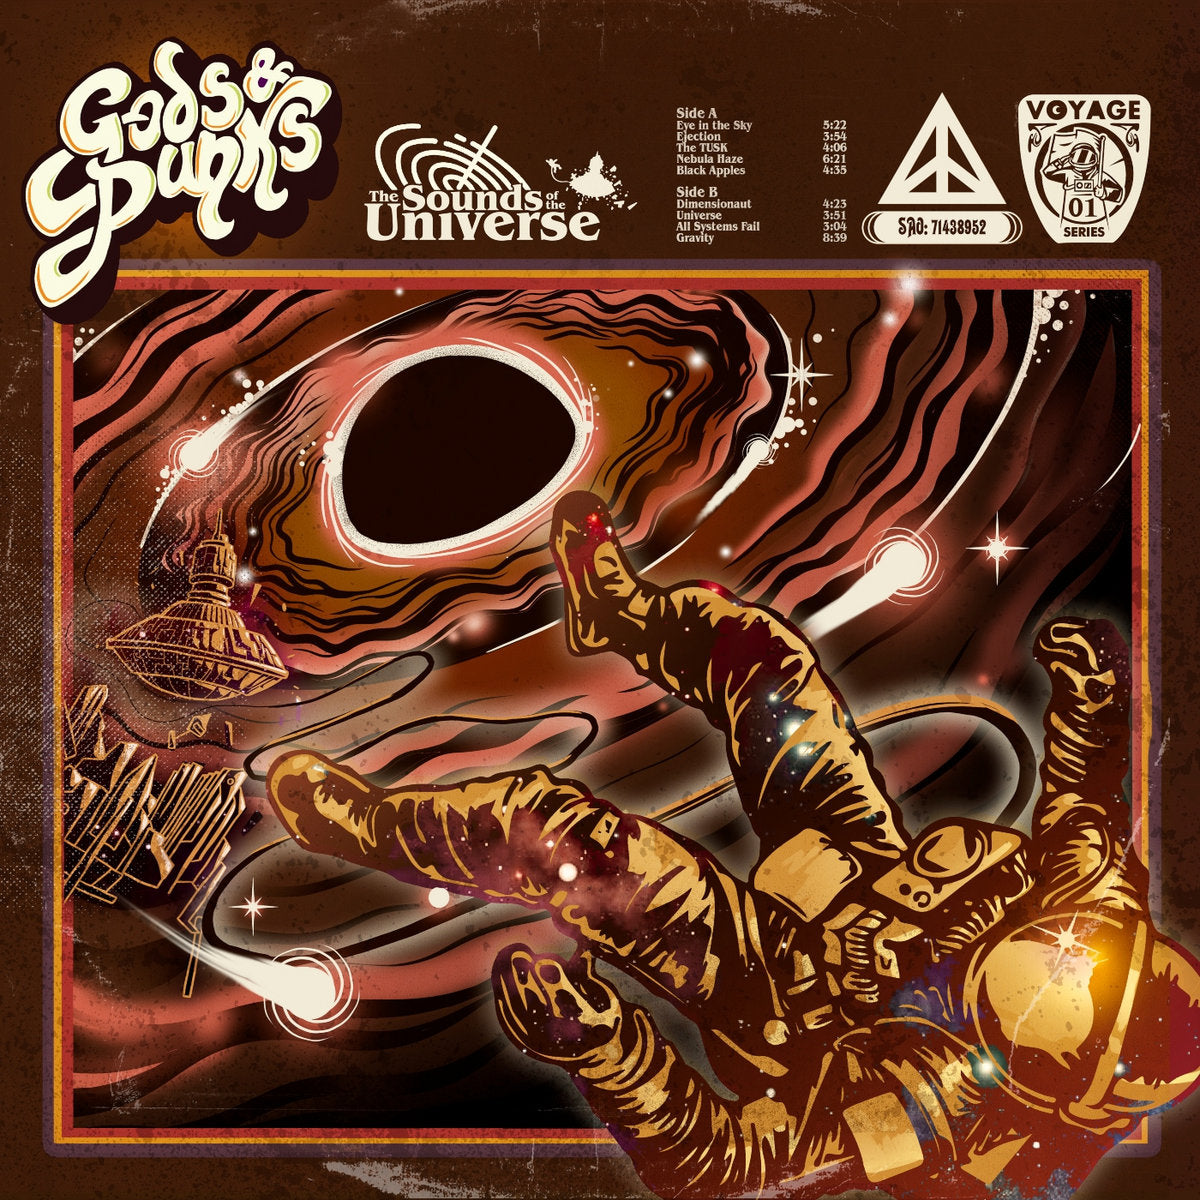 Gods & Punks - "The Sounds of the Universe" Golden Vinyl LP